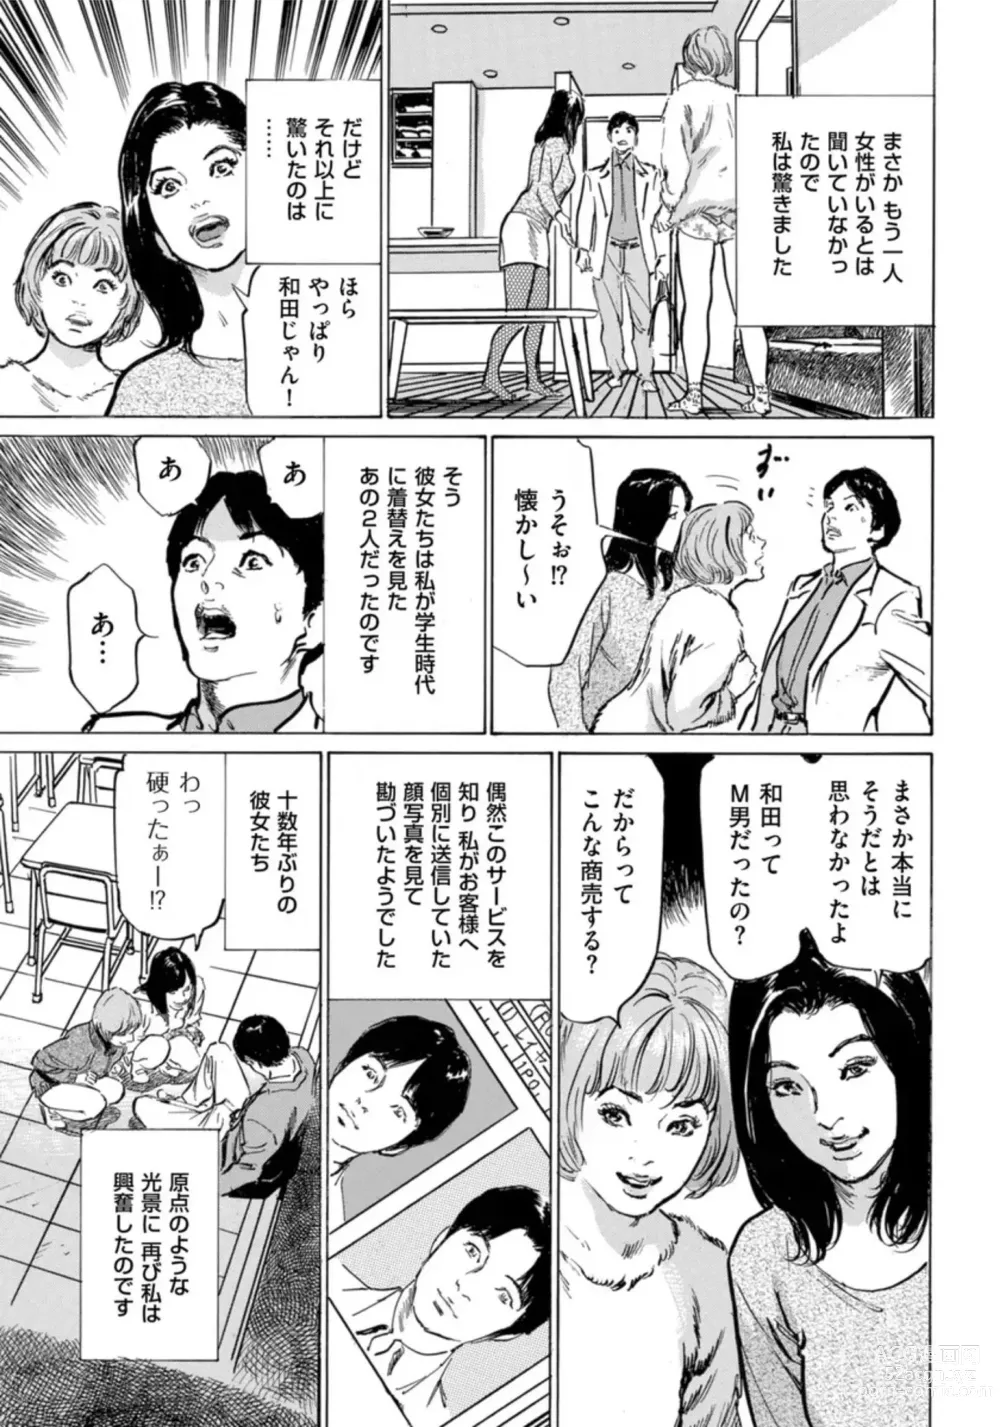 Page 218 of manga Hontou ni Atta Omowazu Zawatsuku Totteoki no Hanashi 14 episodes